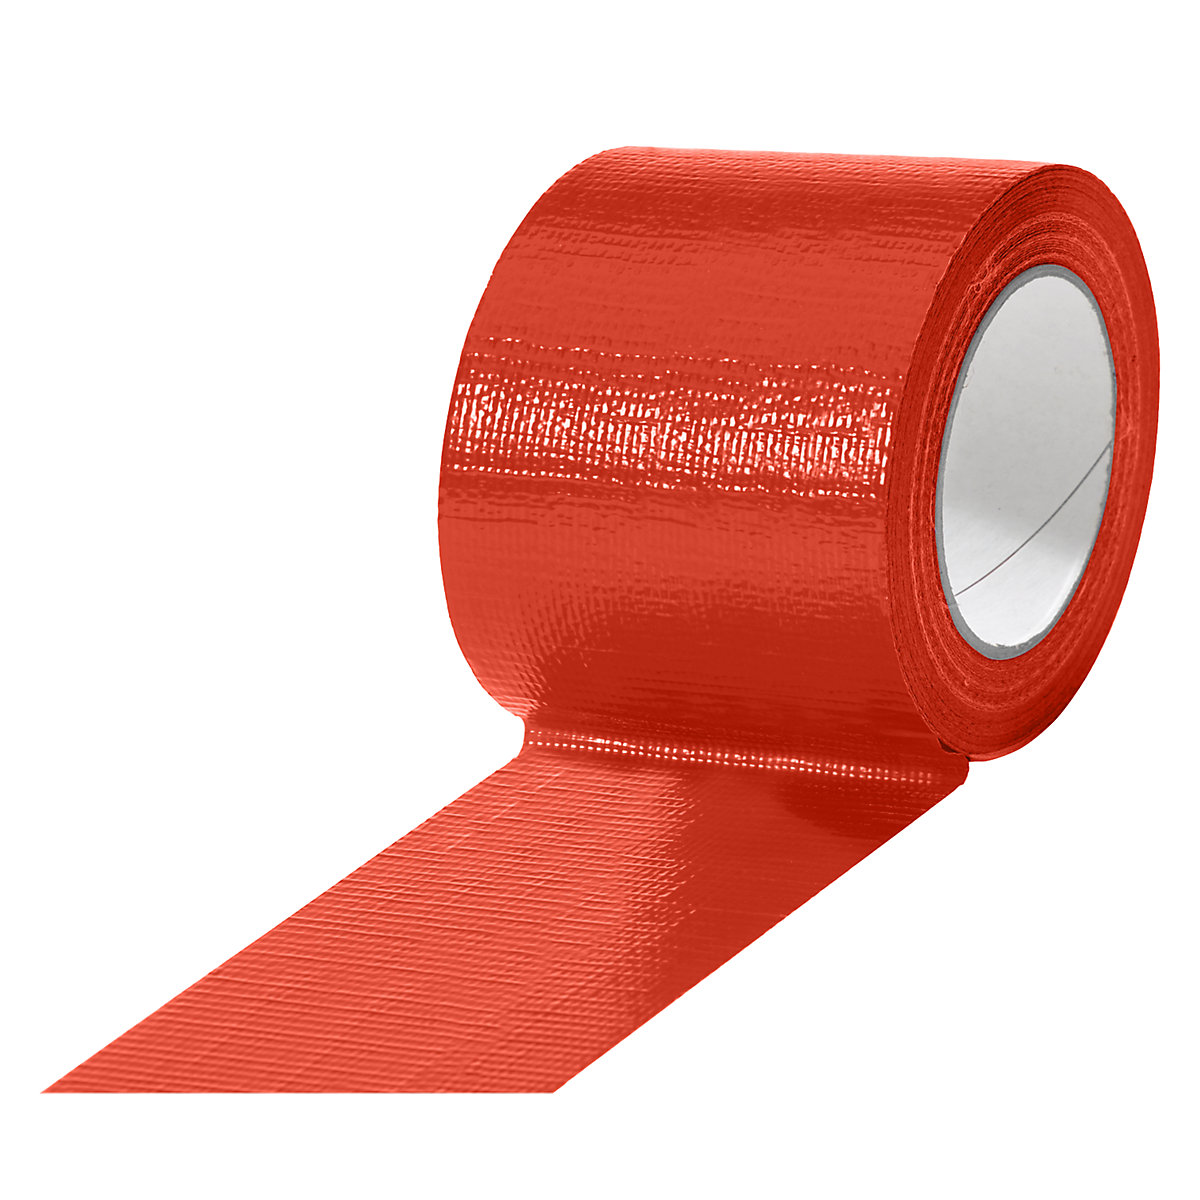 Taśma tkaninowa, w różnych kolorach, opak. 12 rolek, czerwona, szer. taśmy 75 mm-14